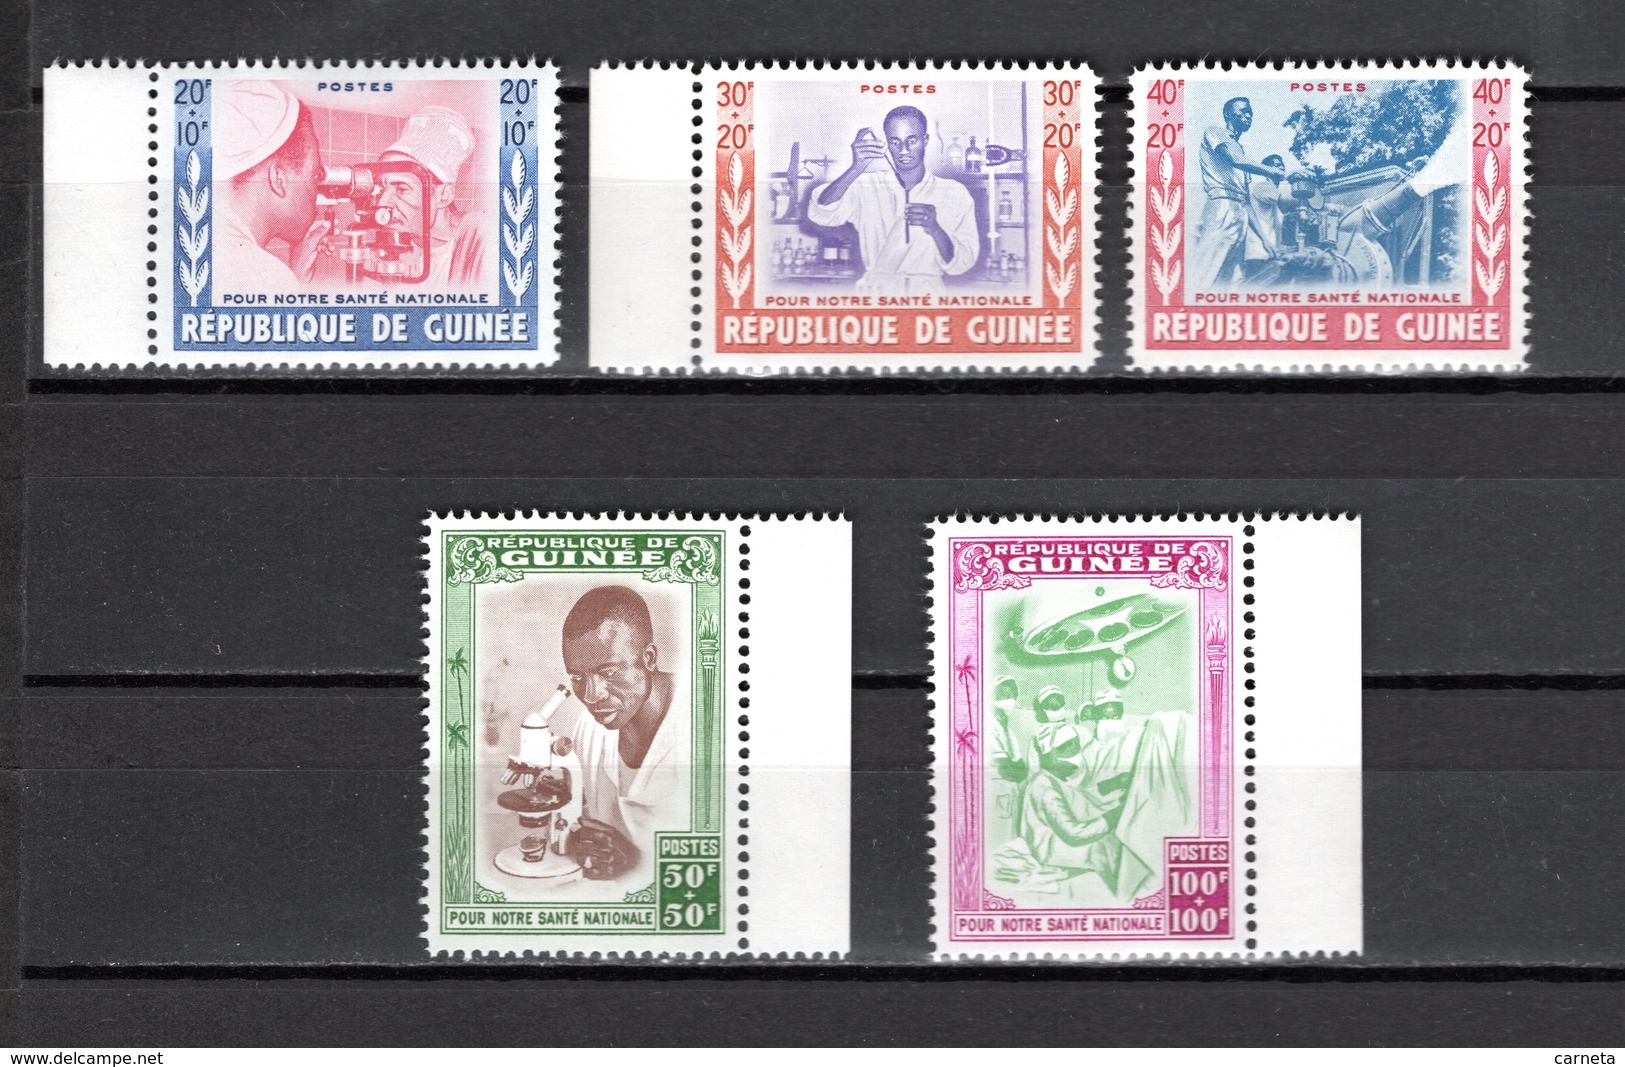 GUINEE N° 27 à 31  NEUFS SANS CHARNIERE COTE 12.00€  SANTE NATIONALE - Guinée (1958-...)